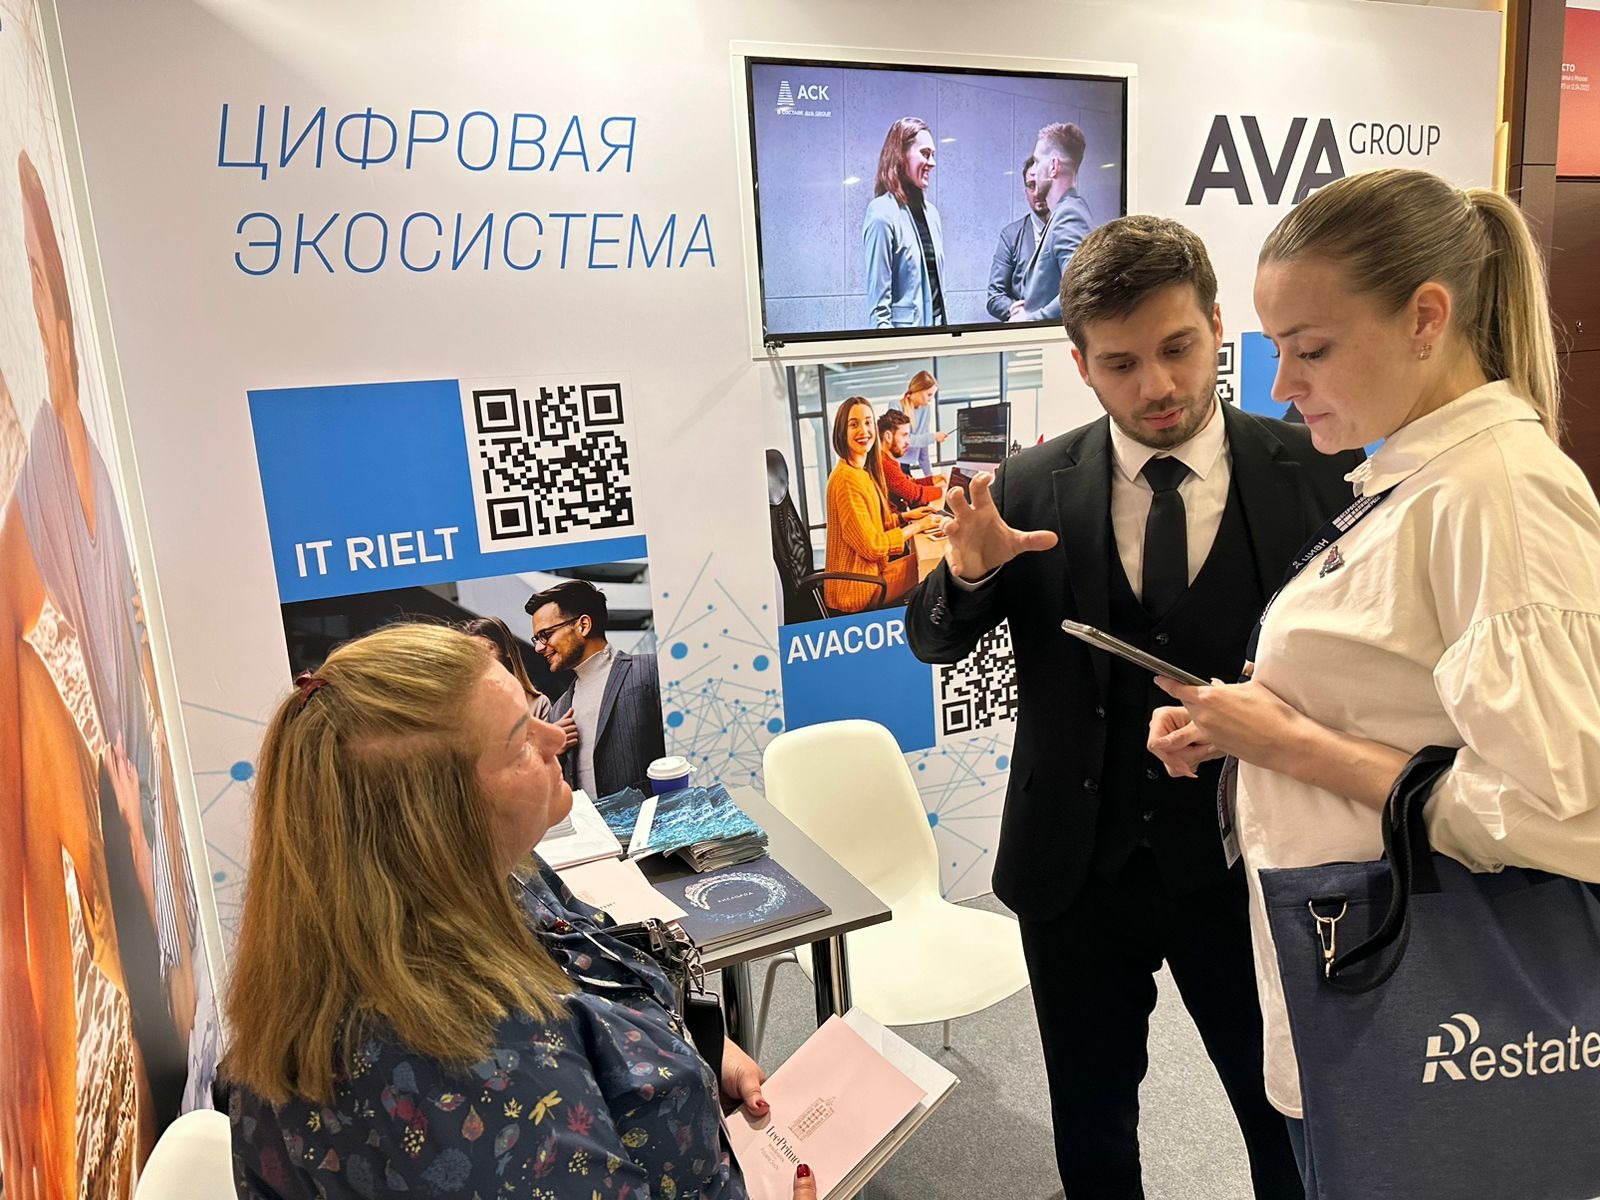 Холдинг AVA Group стал участником Всероссийского жилищного конгресса